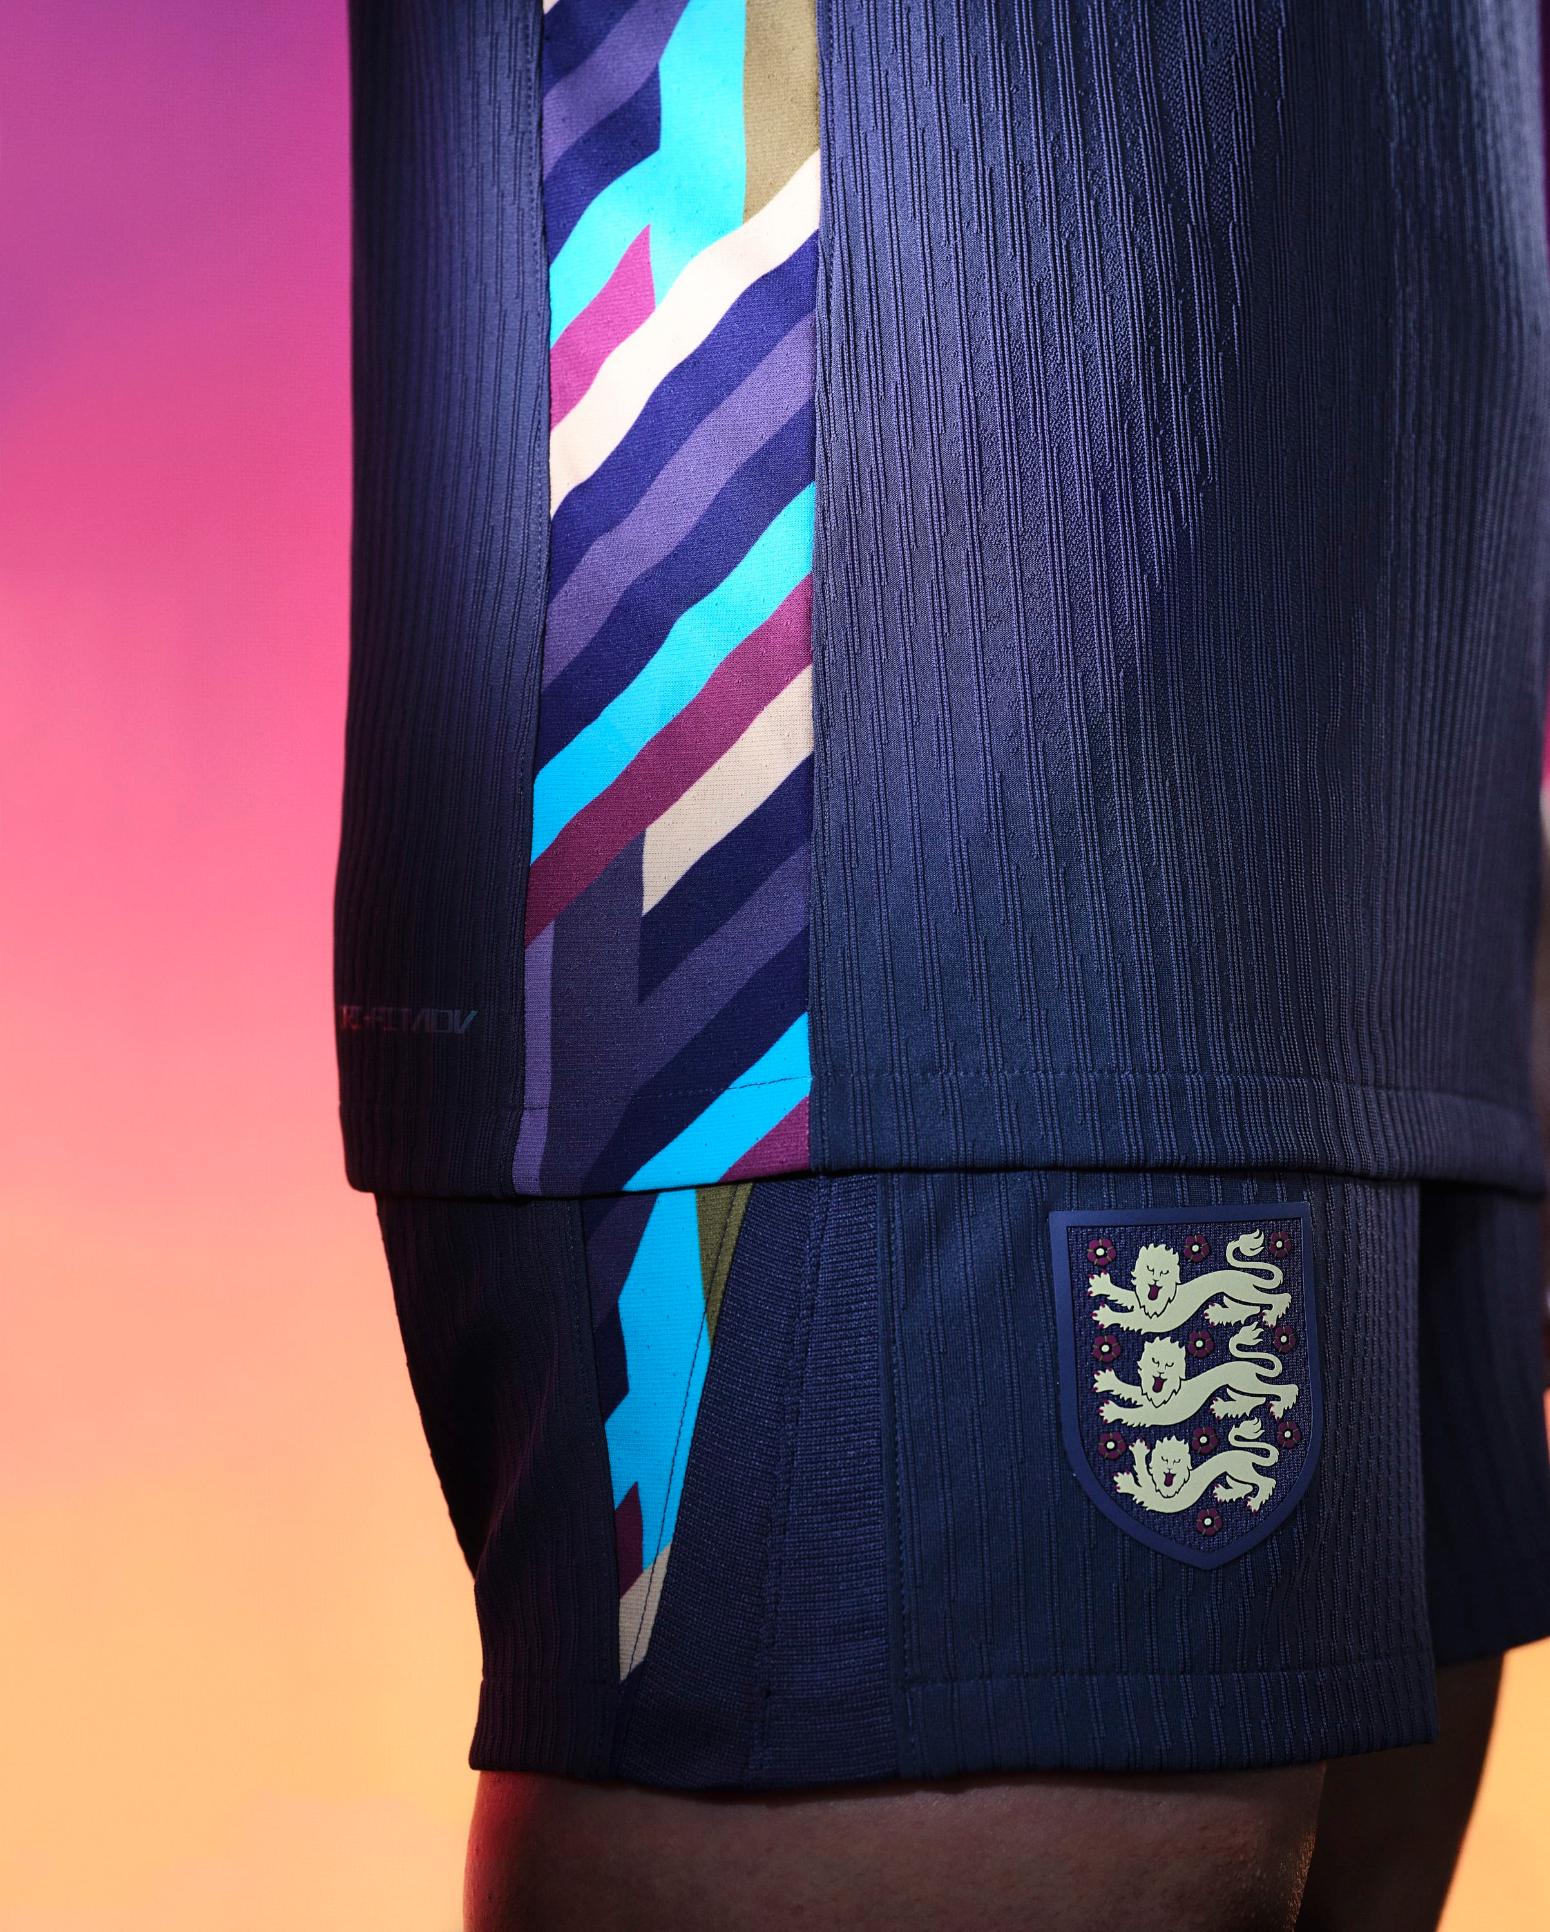 Το εκτός έδρας σετ της Αγγλίας για το Euro 2024 κυκλοφόρησε και η χρωματική επιλογή έκπληξ